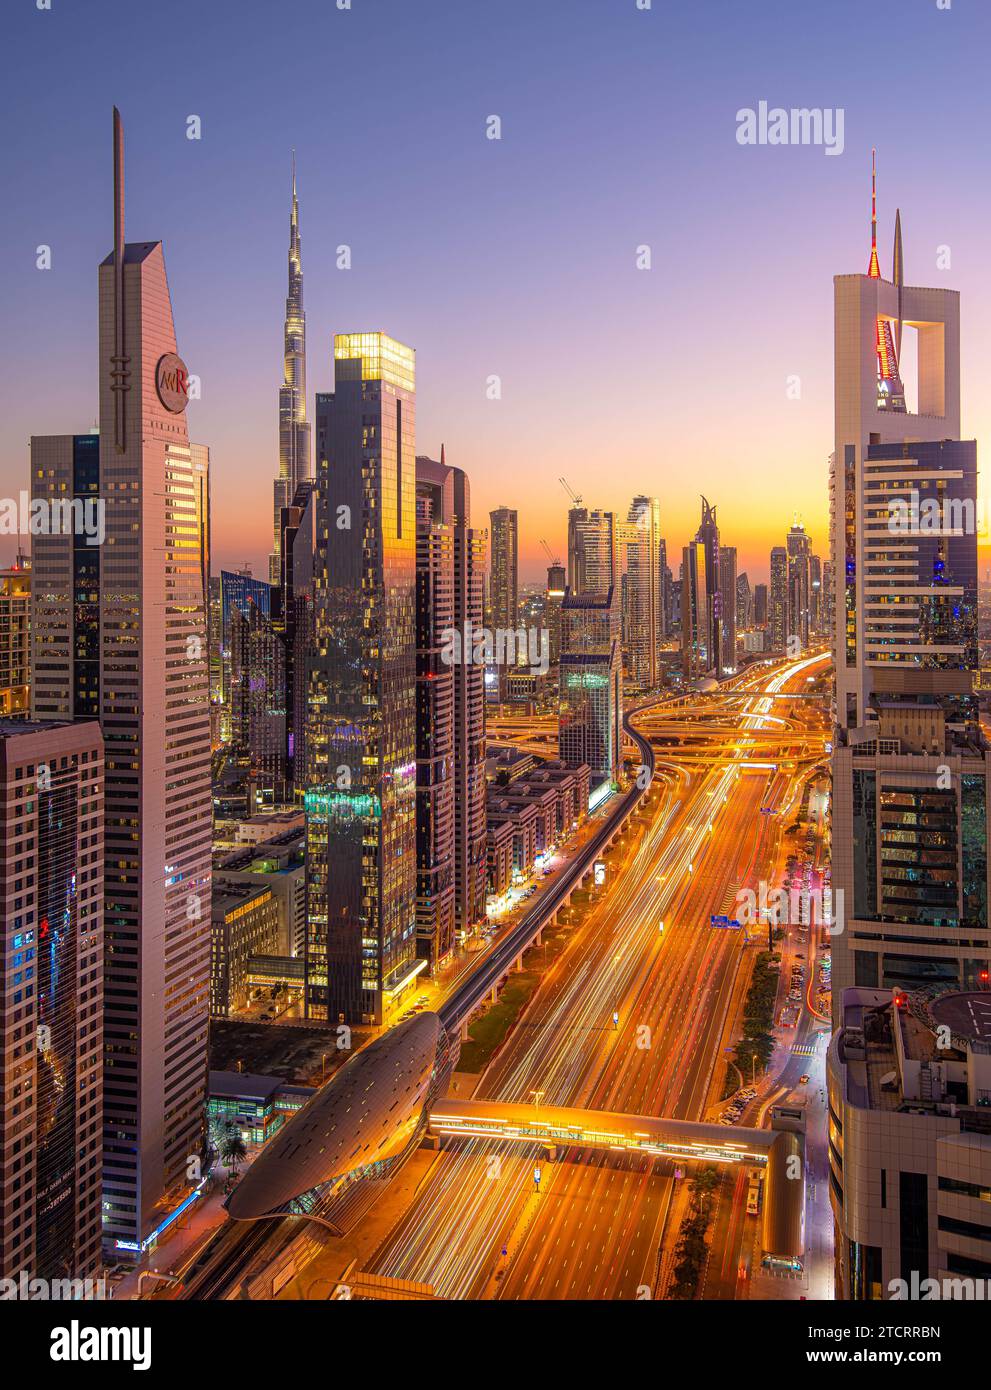 Belle vue aérienne du paysage futuriste de la ville avec des routes, des voitures et des gratte-ciel. Dubaï, Émirats arabes Unis. Photo de haute qualité Banque D'Images